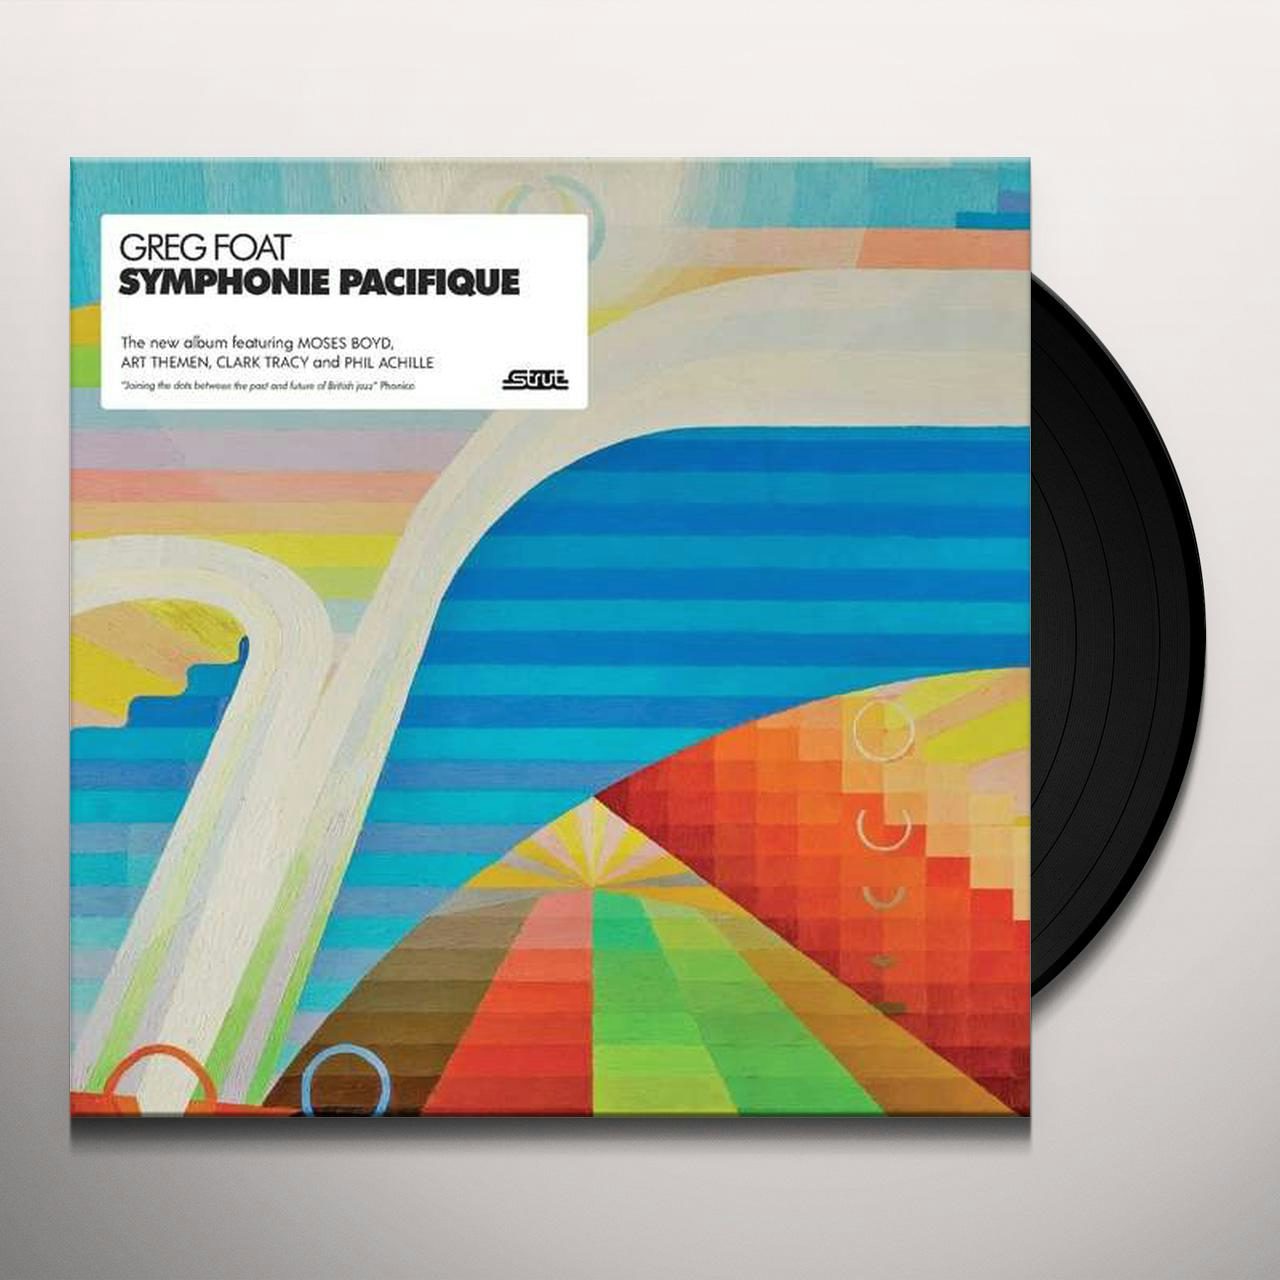 Greg Foat SYMPHONIE PACIQUE (2LP/DL CARD) Vinyl Record